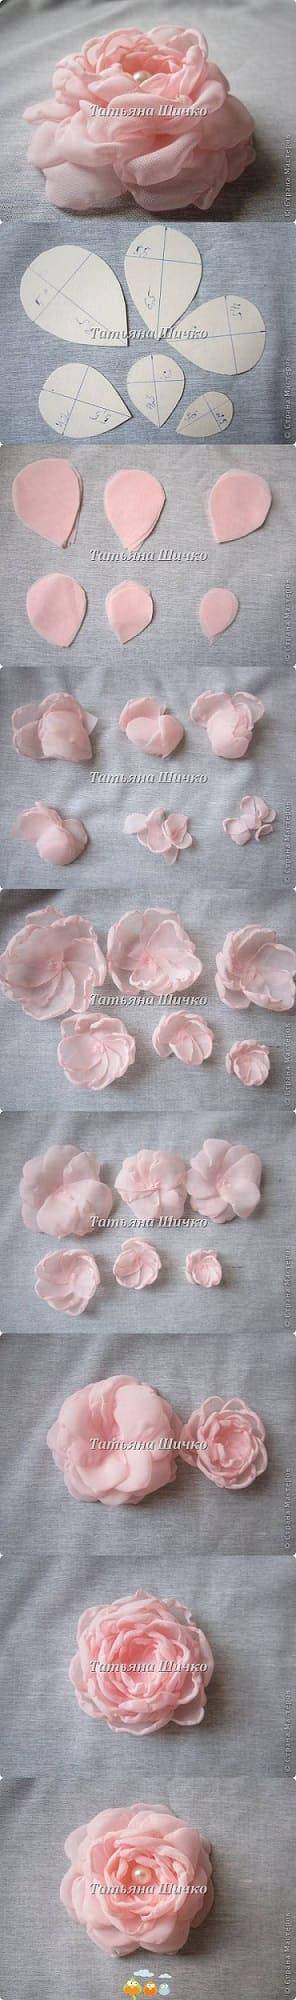 como fazer flor de tecido com moldes